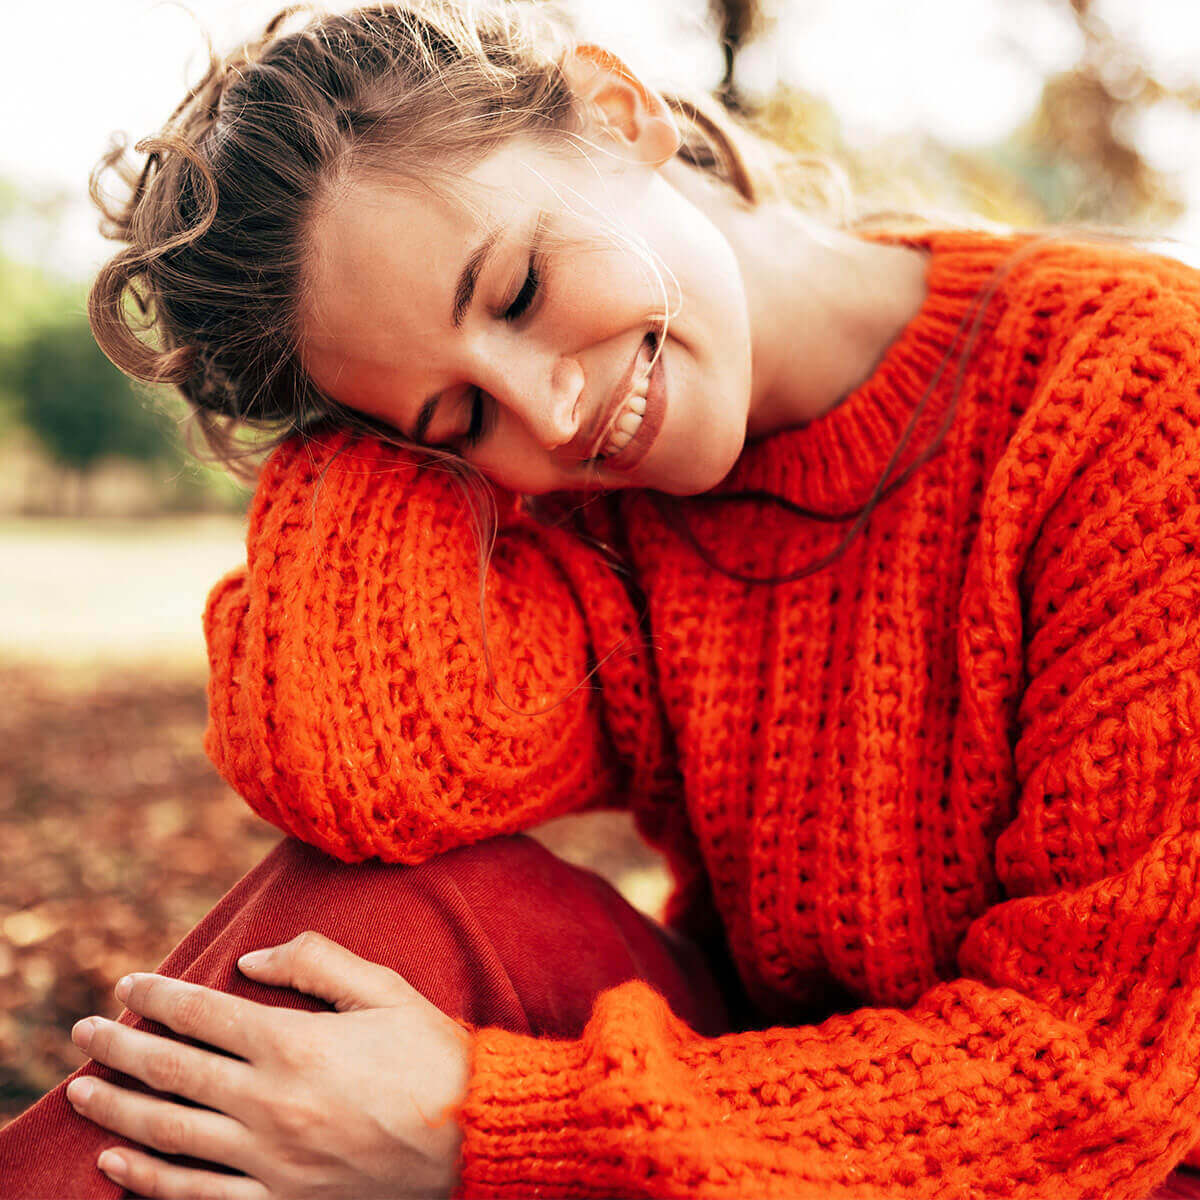 GRAPEFRUIT-KERN-EXTRAKT Tabletten + Vitamin C BIO:  Lächelnde Frau sitzt auf einer Wiese 